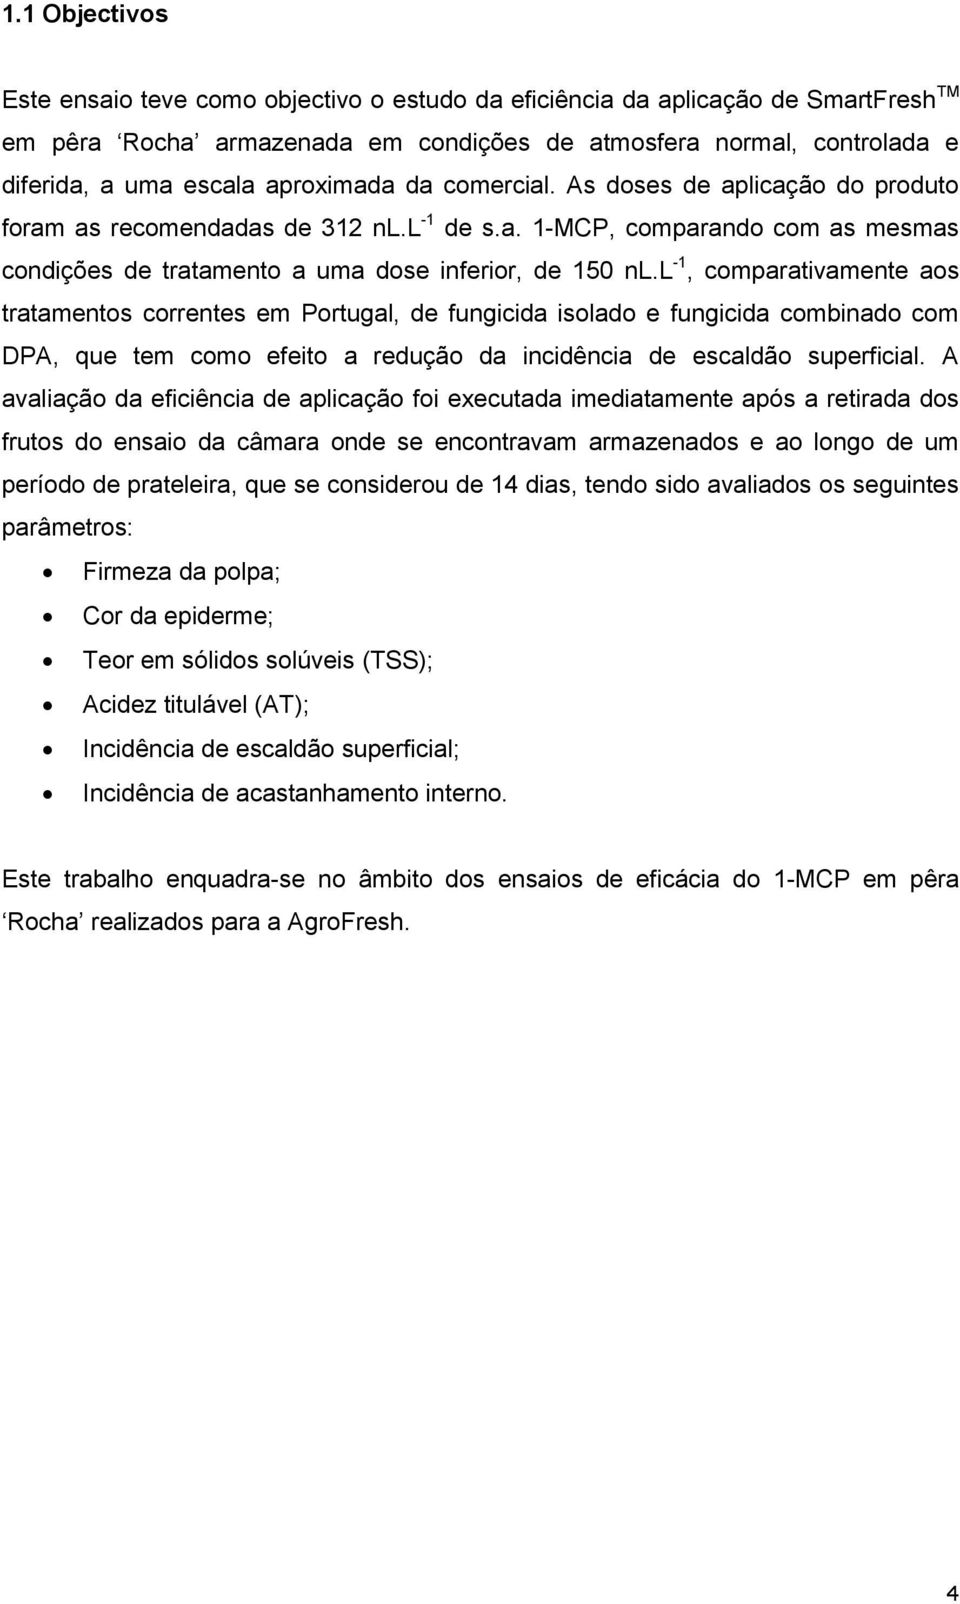 l -1, comparativamente aos tratamentos correntes em Portugal, de fungicida isolado e fungicida combinado com DPA, que tem como efeito a redução da incidência de escaldão superficial.